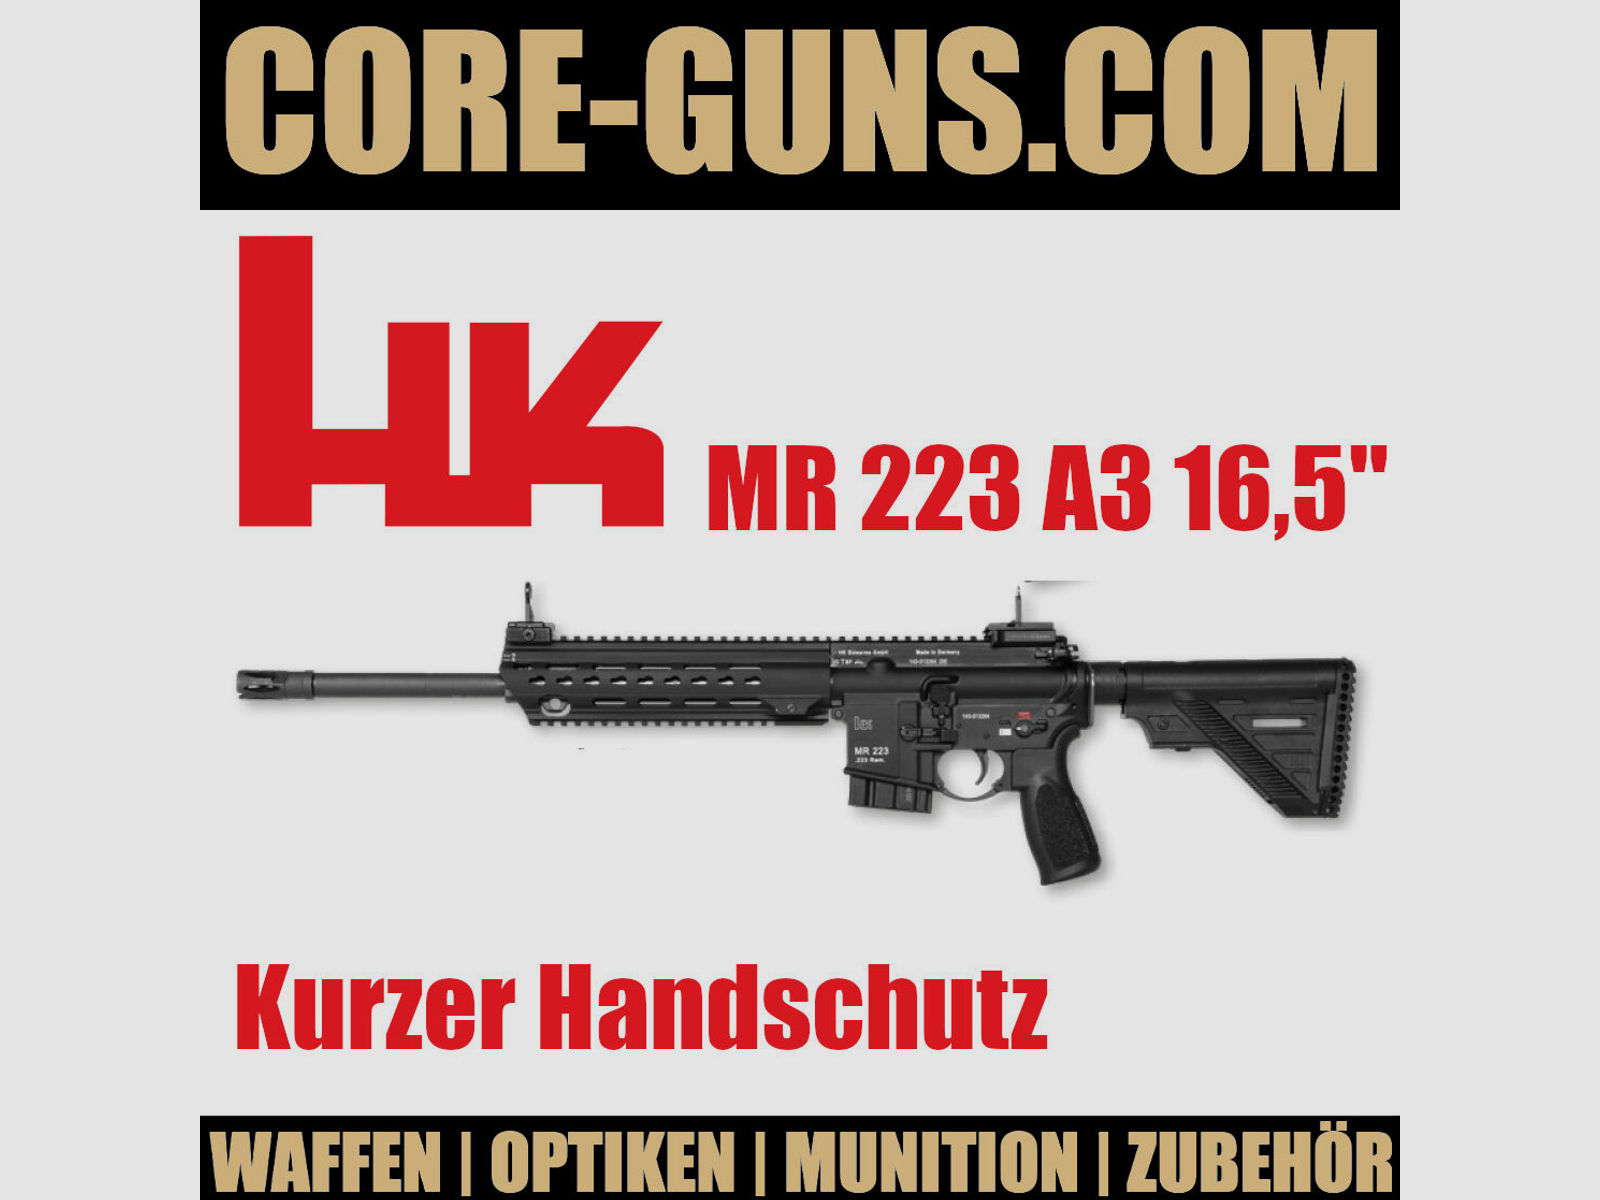 Heckler & Koch MR 223 A3 kurzer Handschutz, Kal. .223 Rem HK MR223	 UVP: 2939€ - Black Rifle Weeks